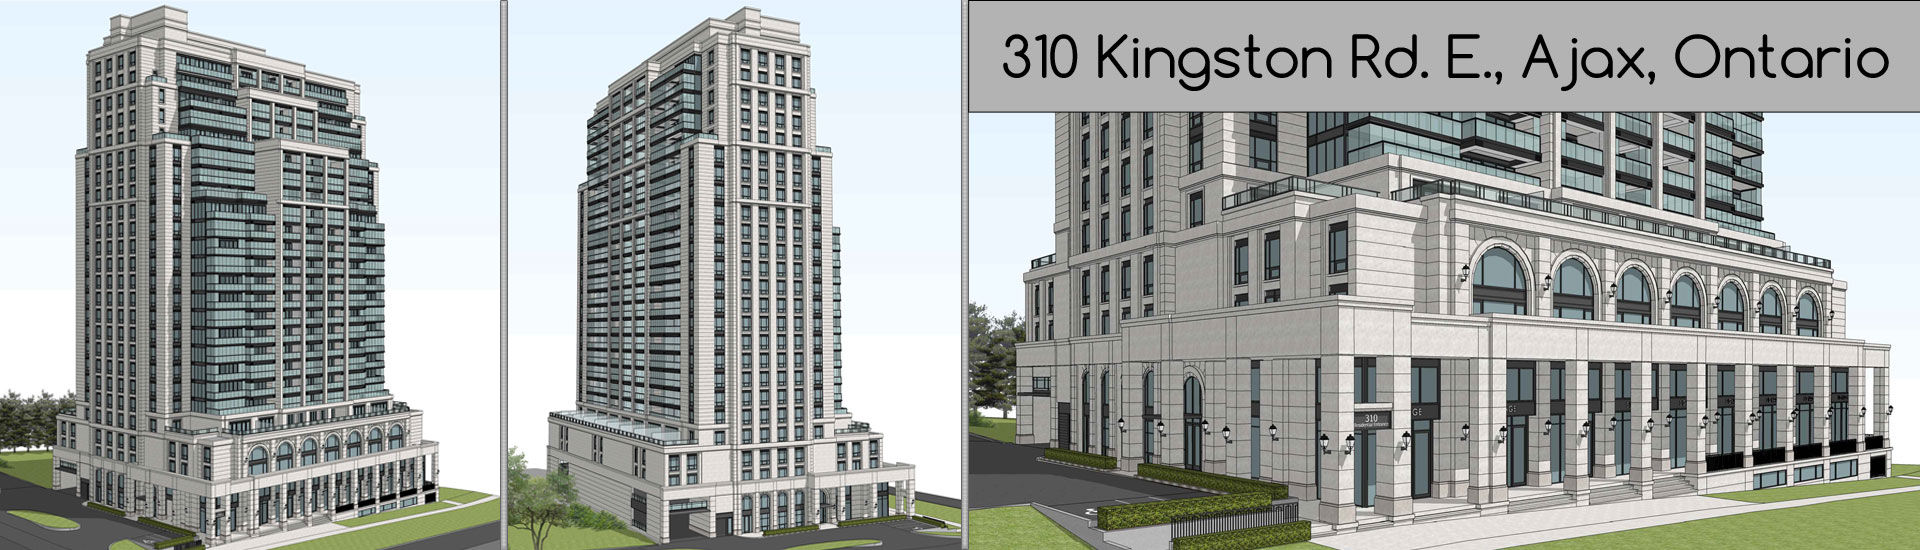 New Condominium 310 Kingston Road, Ajax, Ontario